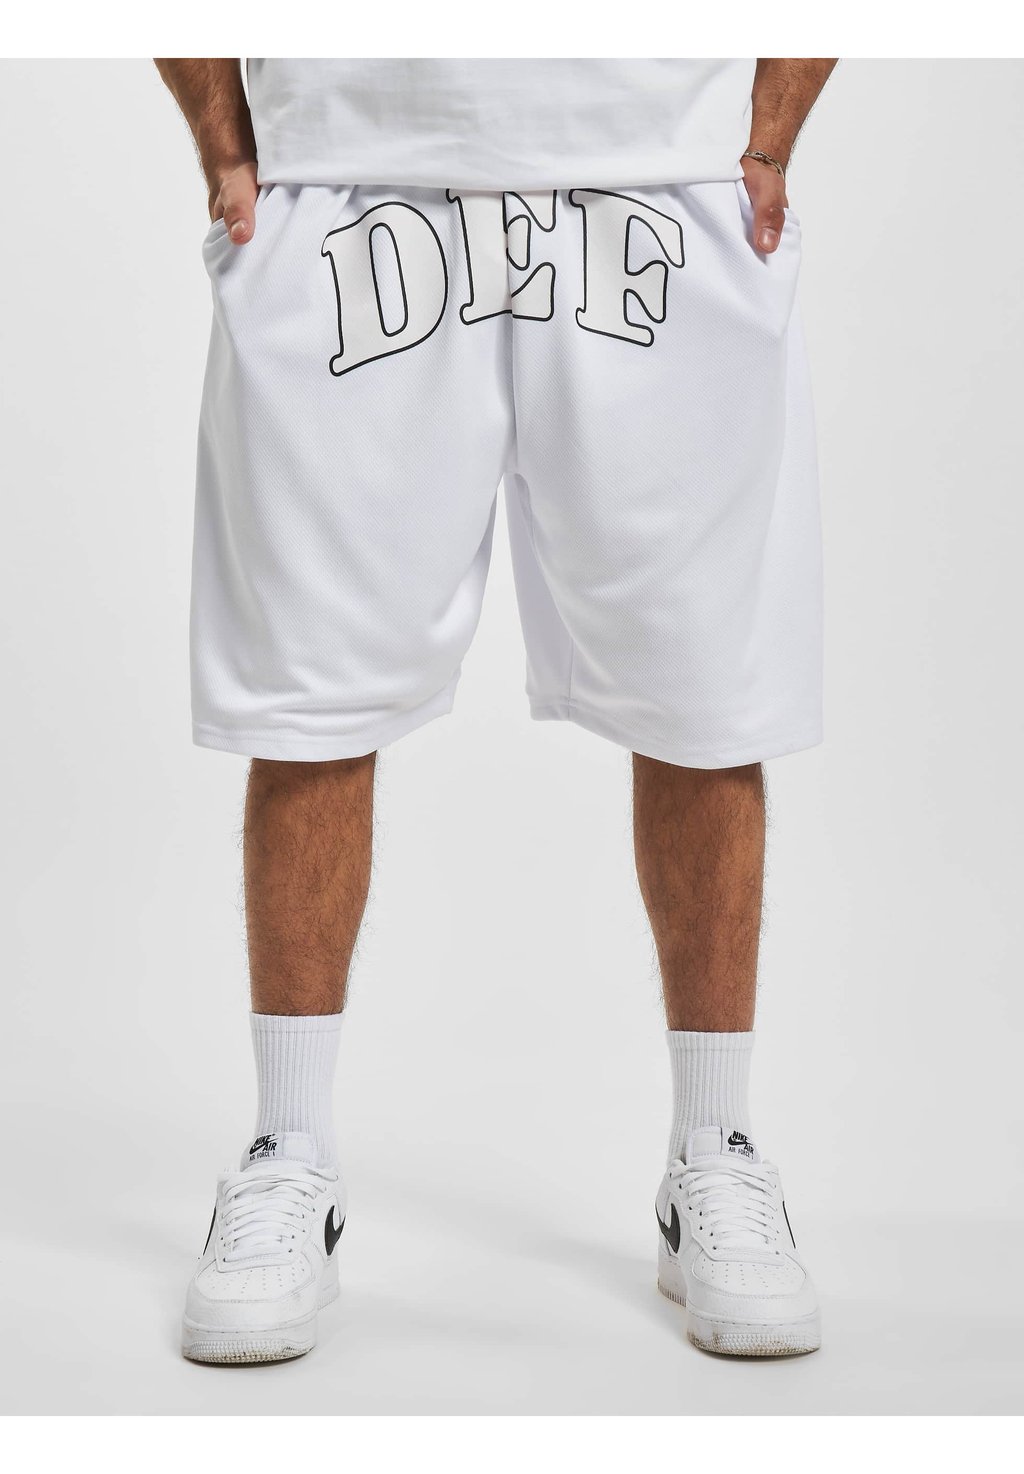 Спортивные брюки Print DEF, белый